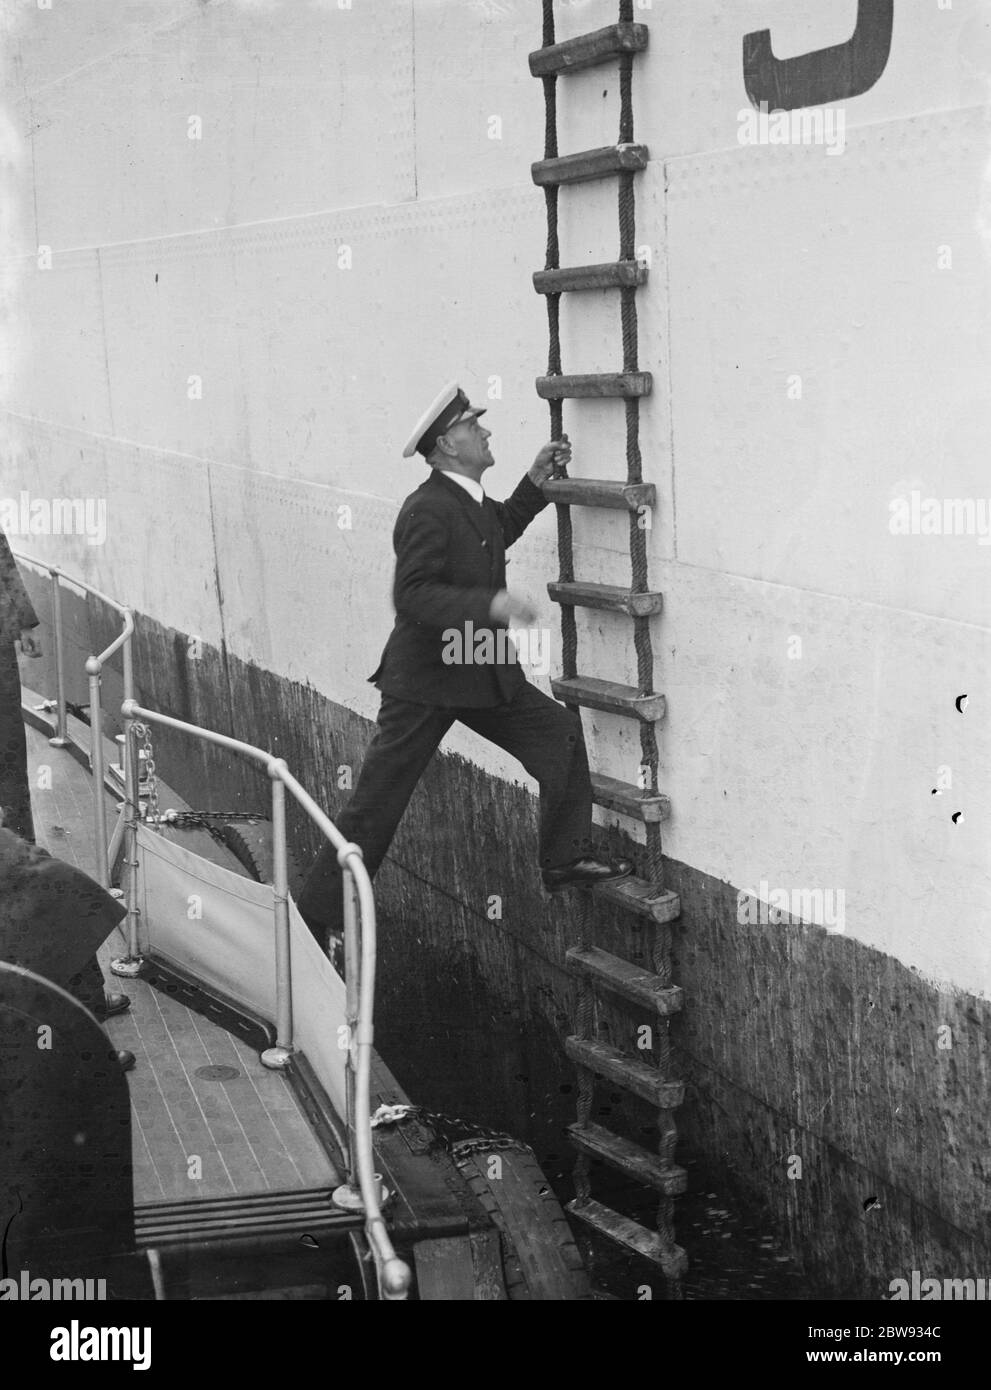 Thames Piloten in Gravesend, Kent, die Schiffen helfen, durch die verstopften Gewässer des Hafens zu navigieren. G W Dean klettert eine Leiter hoch, um an Bord eines Schiffes zu gehen. 1939 Stockfoto